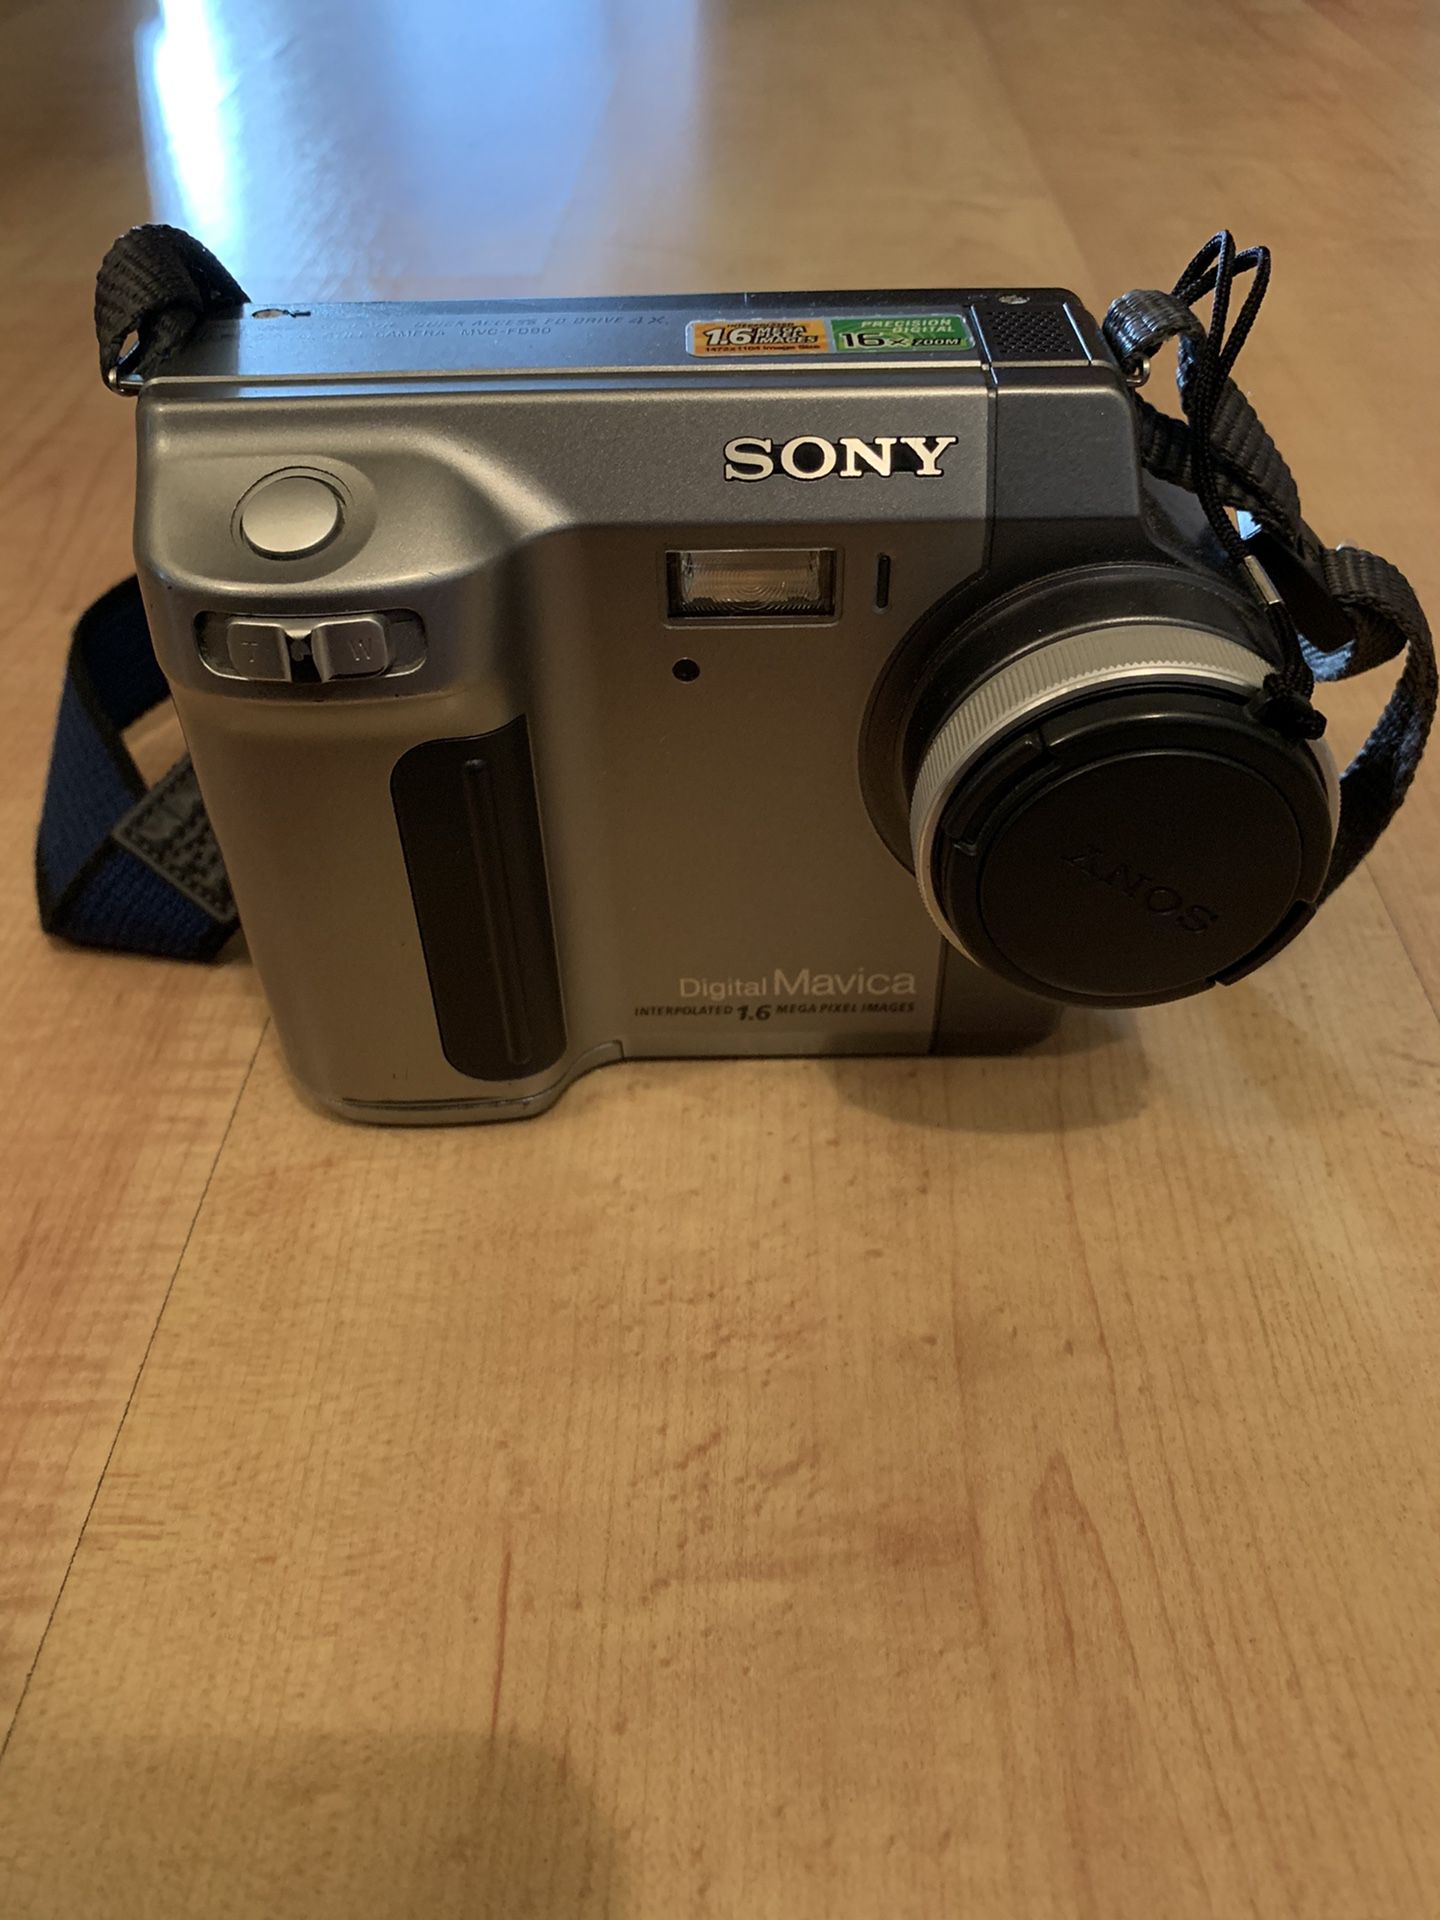 Sony Mavica Digital Camera with Case